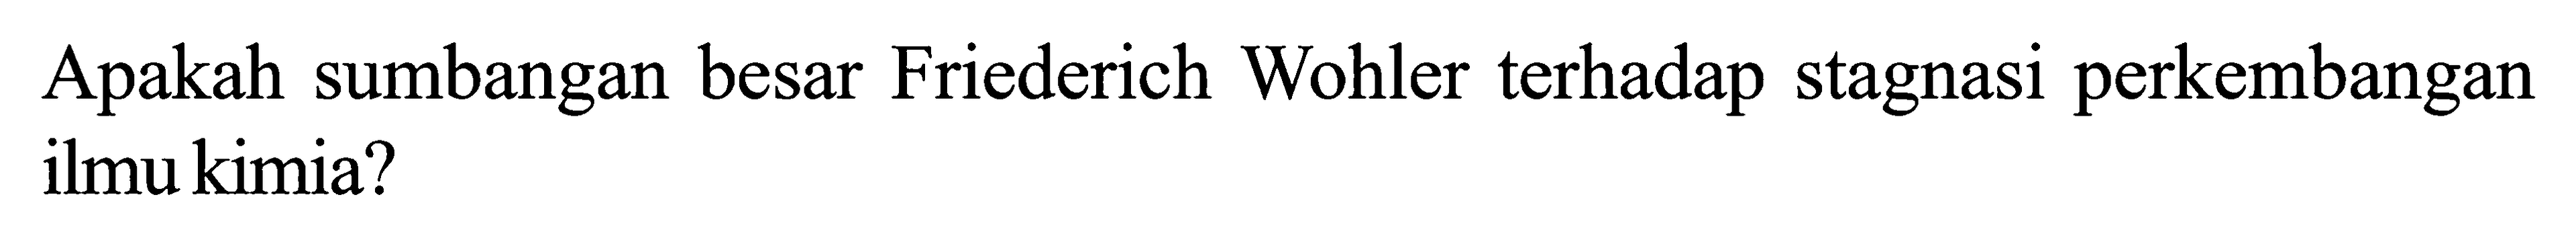 Apakah sumbangan besar Friederich Wohler terhadap stagnasi perkembangan ilmu kimia?